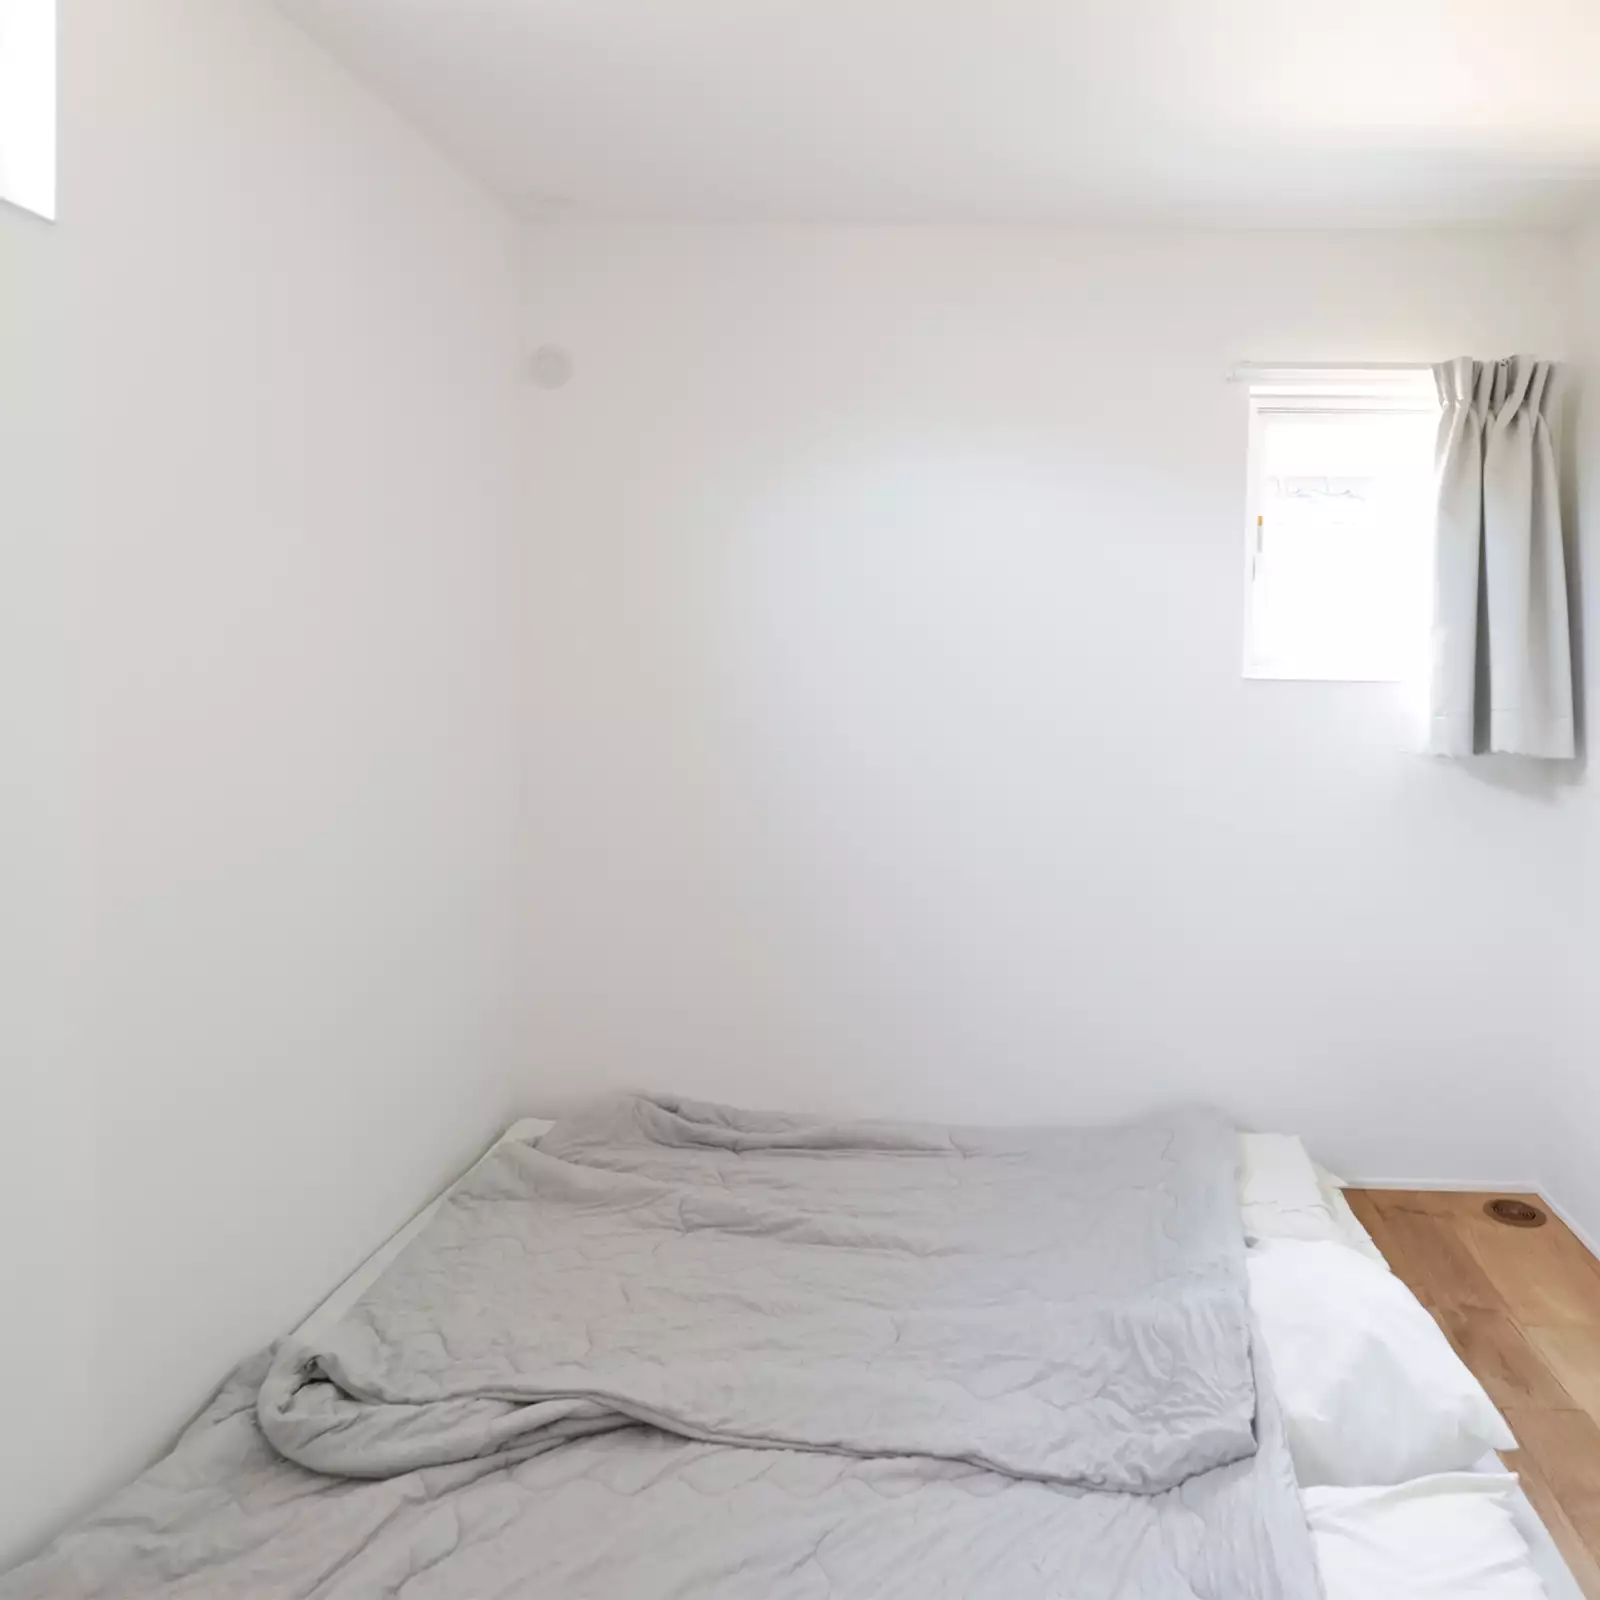 R+houseの物件の寝室の写真。小さな窓が上部についているだけのシンプルなお部屋。